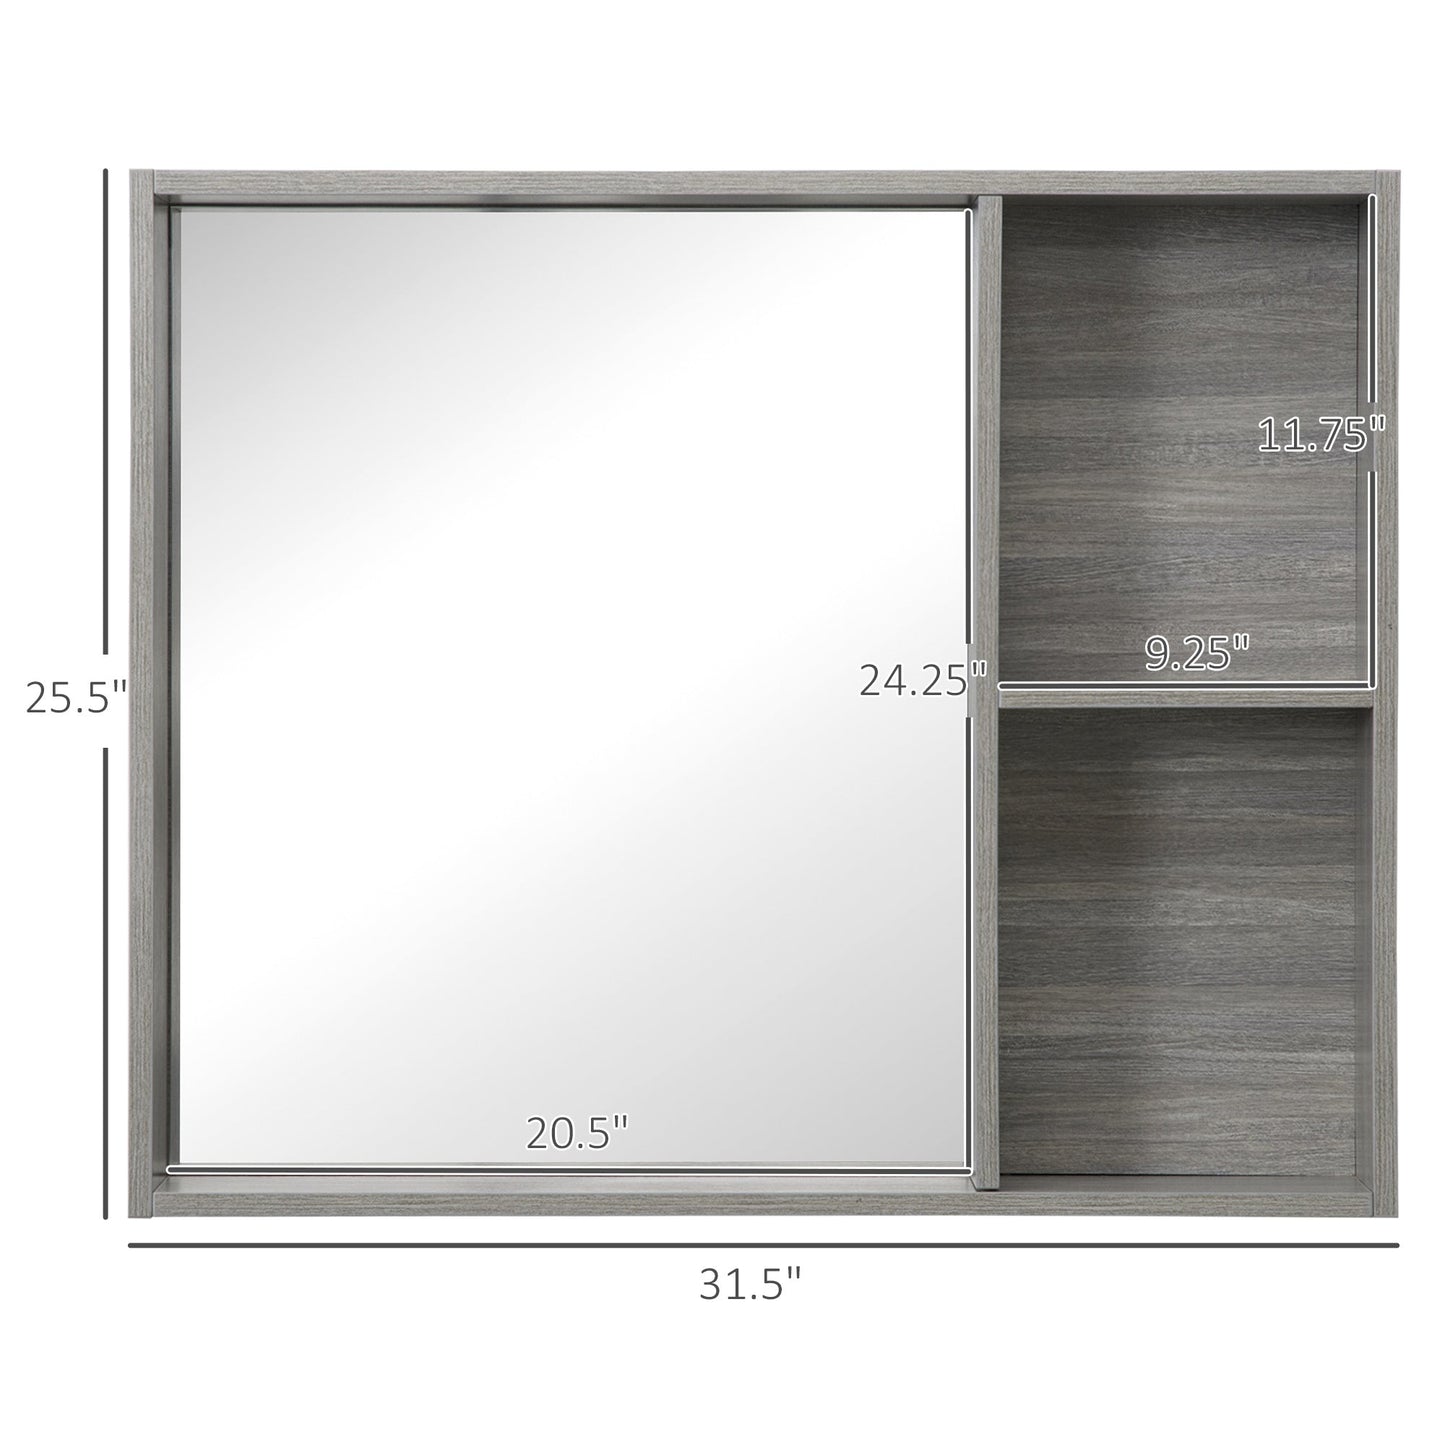 31.5 Inch x 25.5 Inch Medicine Cabinet with Mirror, 2-Tier Storage Shelf, Wall Mounted Bathroom Mirror Cabinet, Gray - Gallery Canada